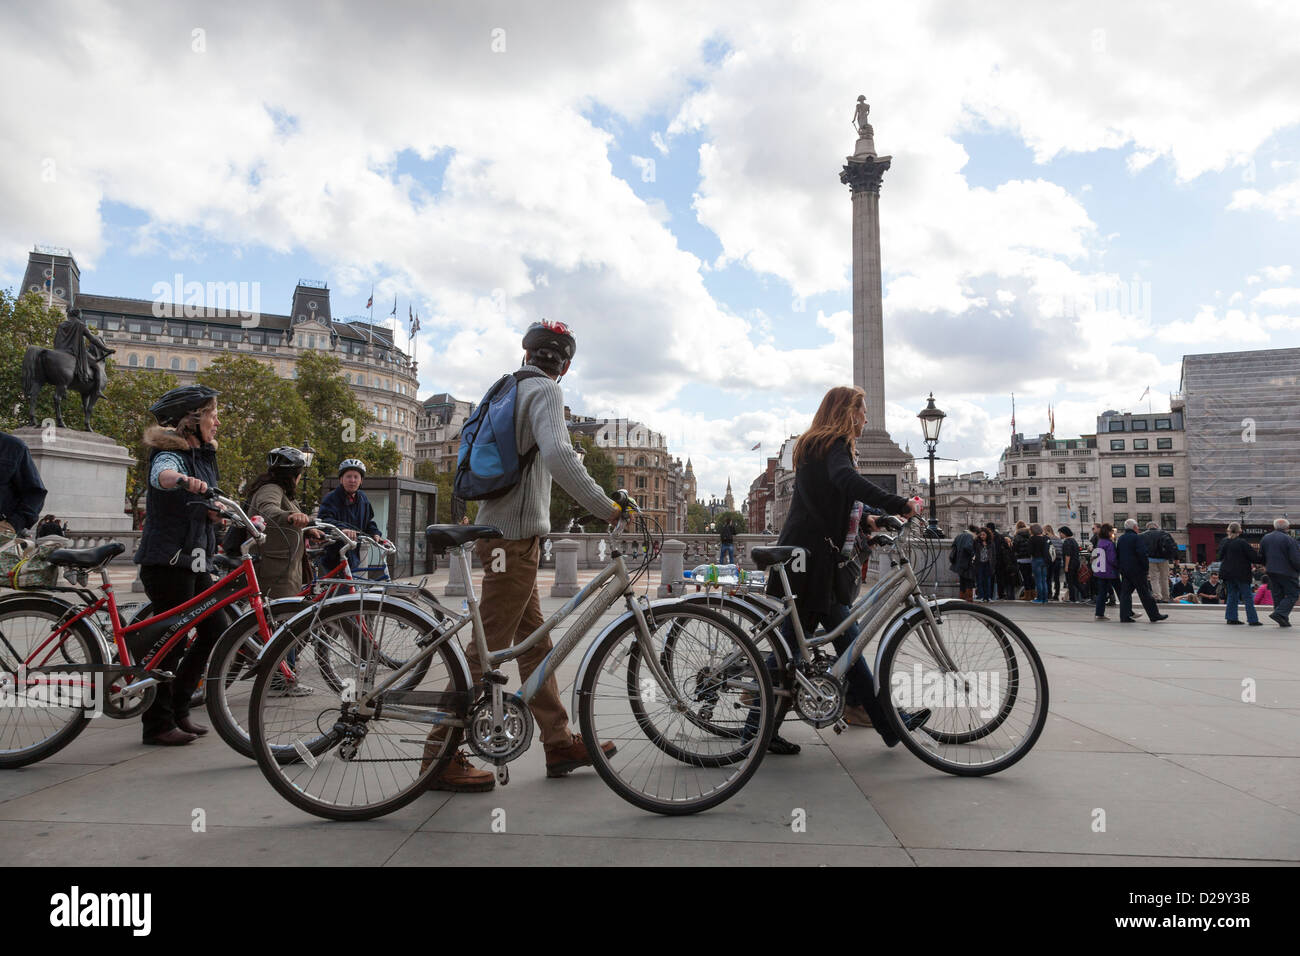 Groupe de touristes pousser leur vélo sur Trafalgar Square, Londres. Banque D'Images